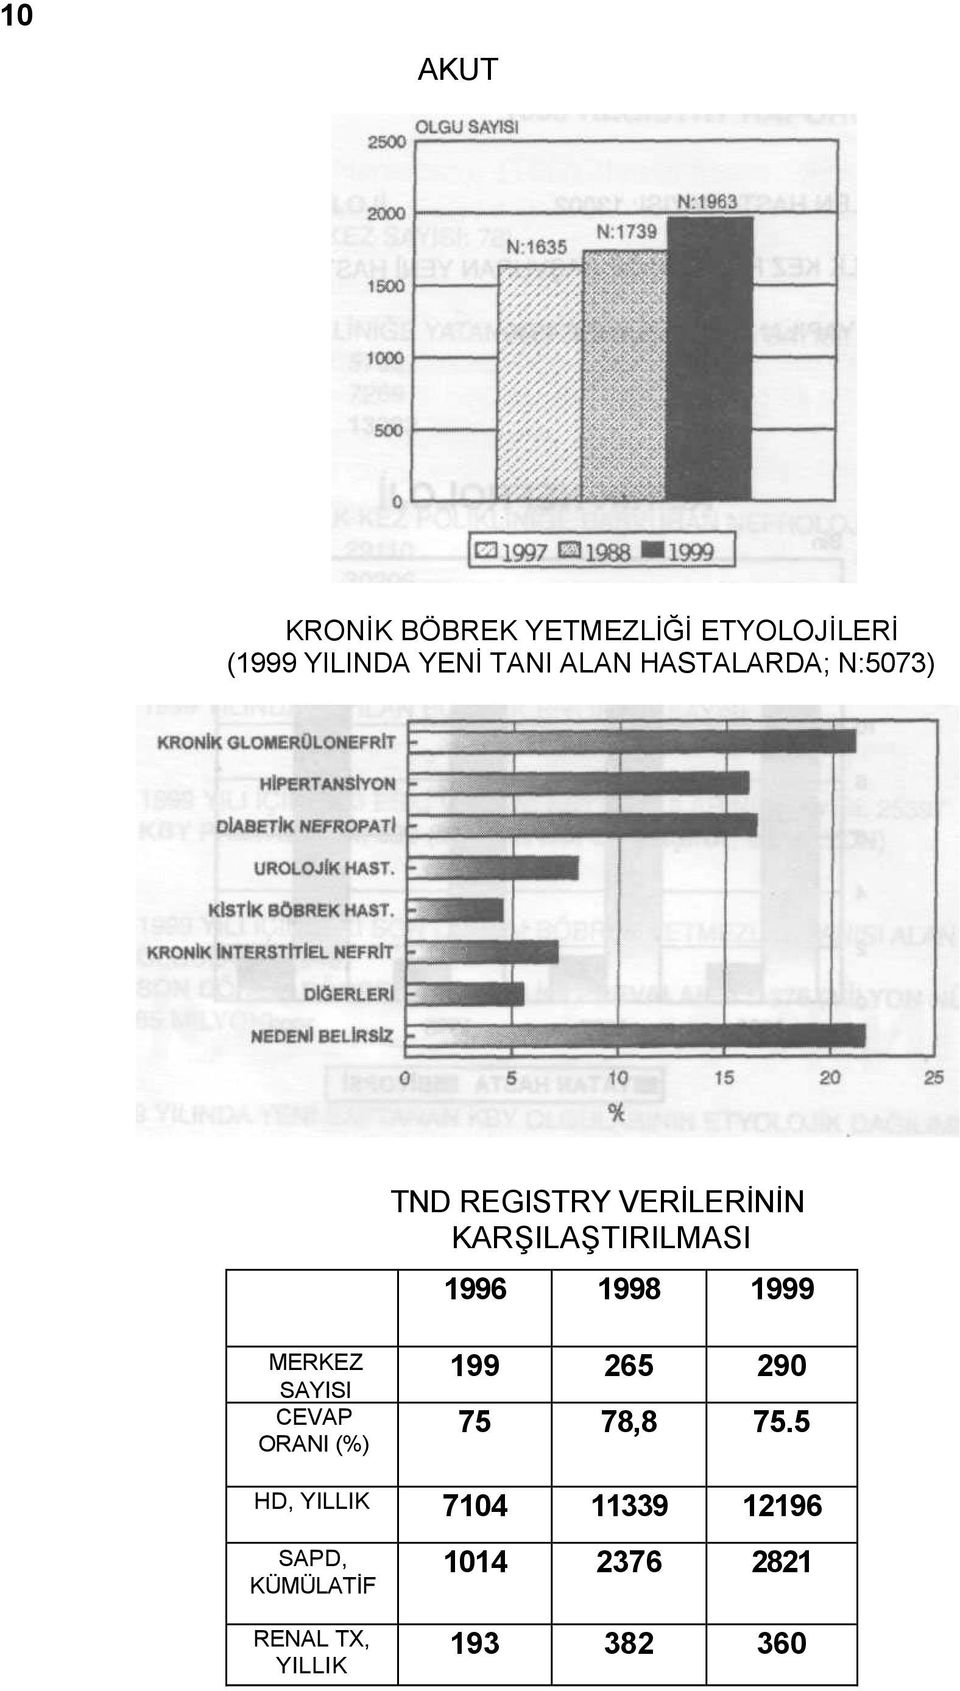 1998 1999 MERKEZ SAYISI CEVAP ORANI (%) 199 265 290 75 78,8 75.